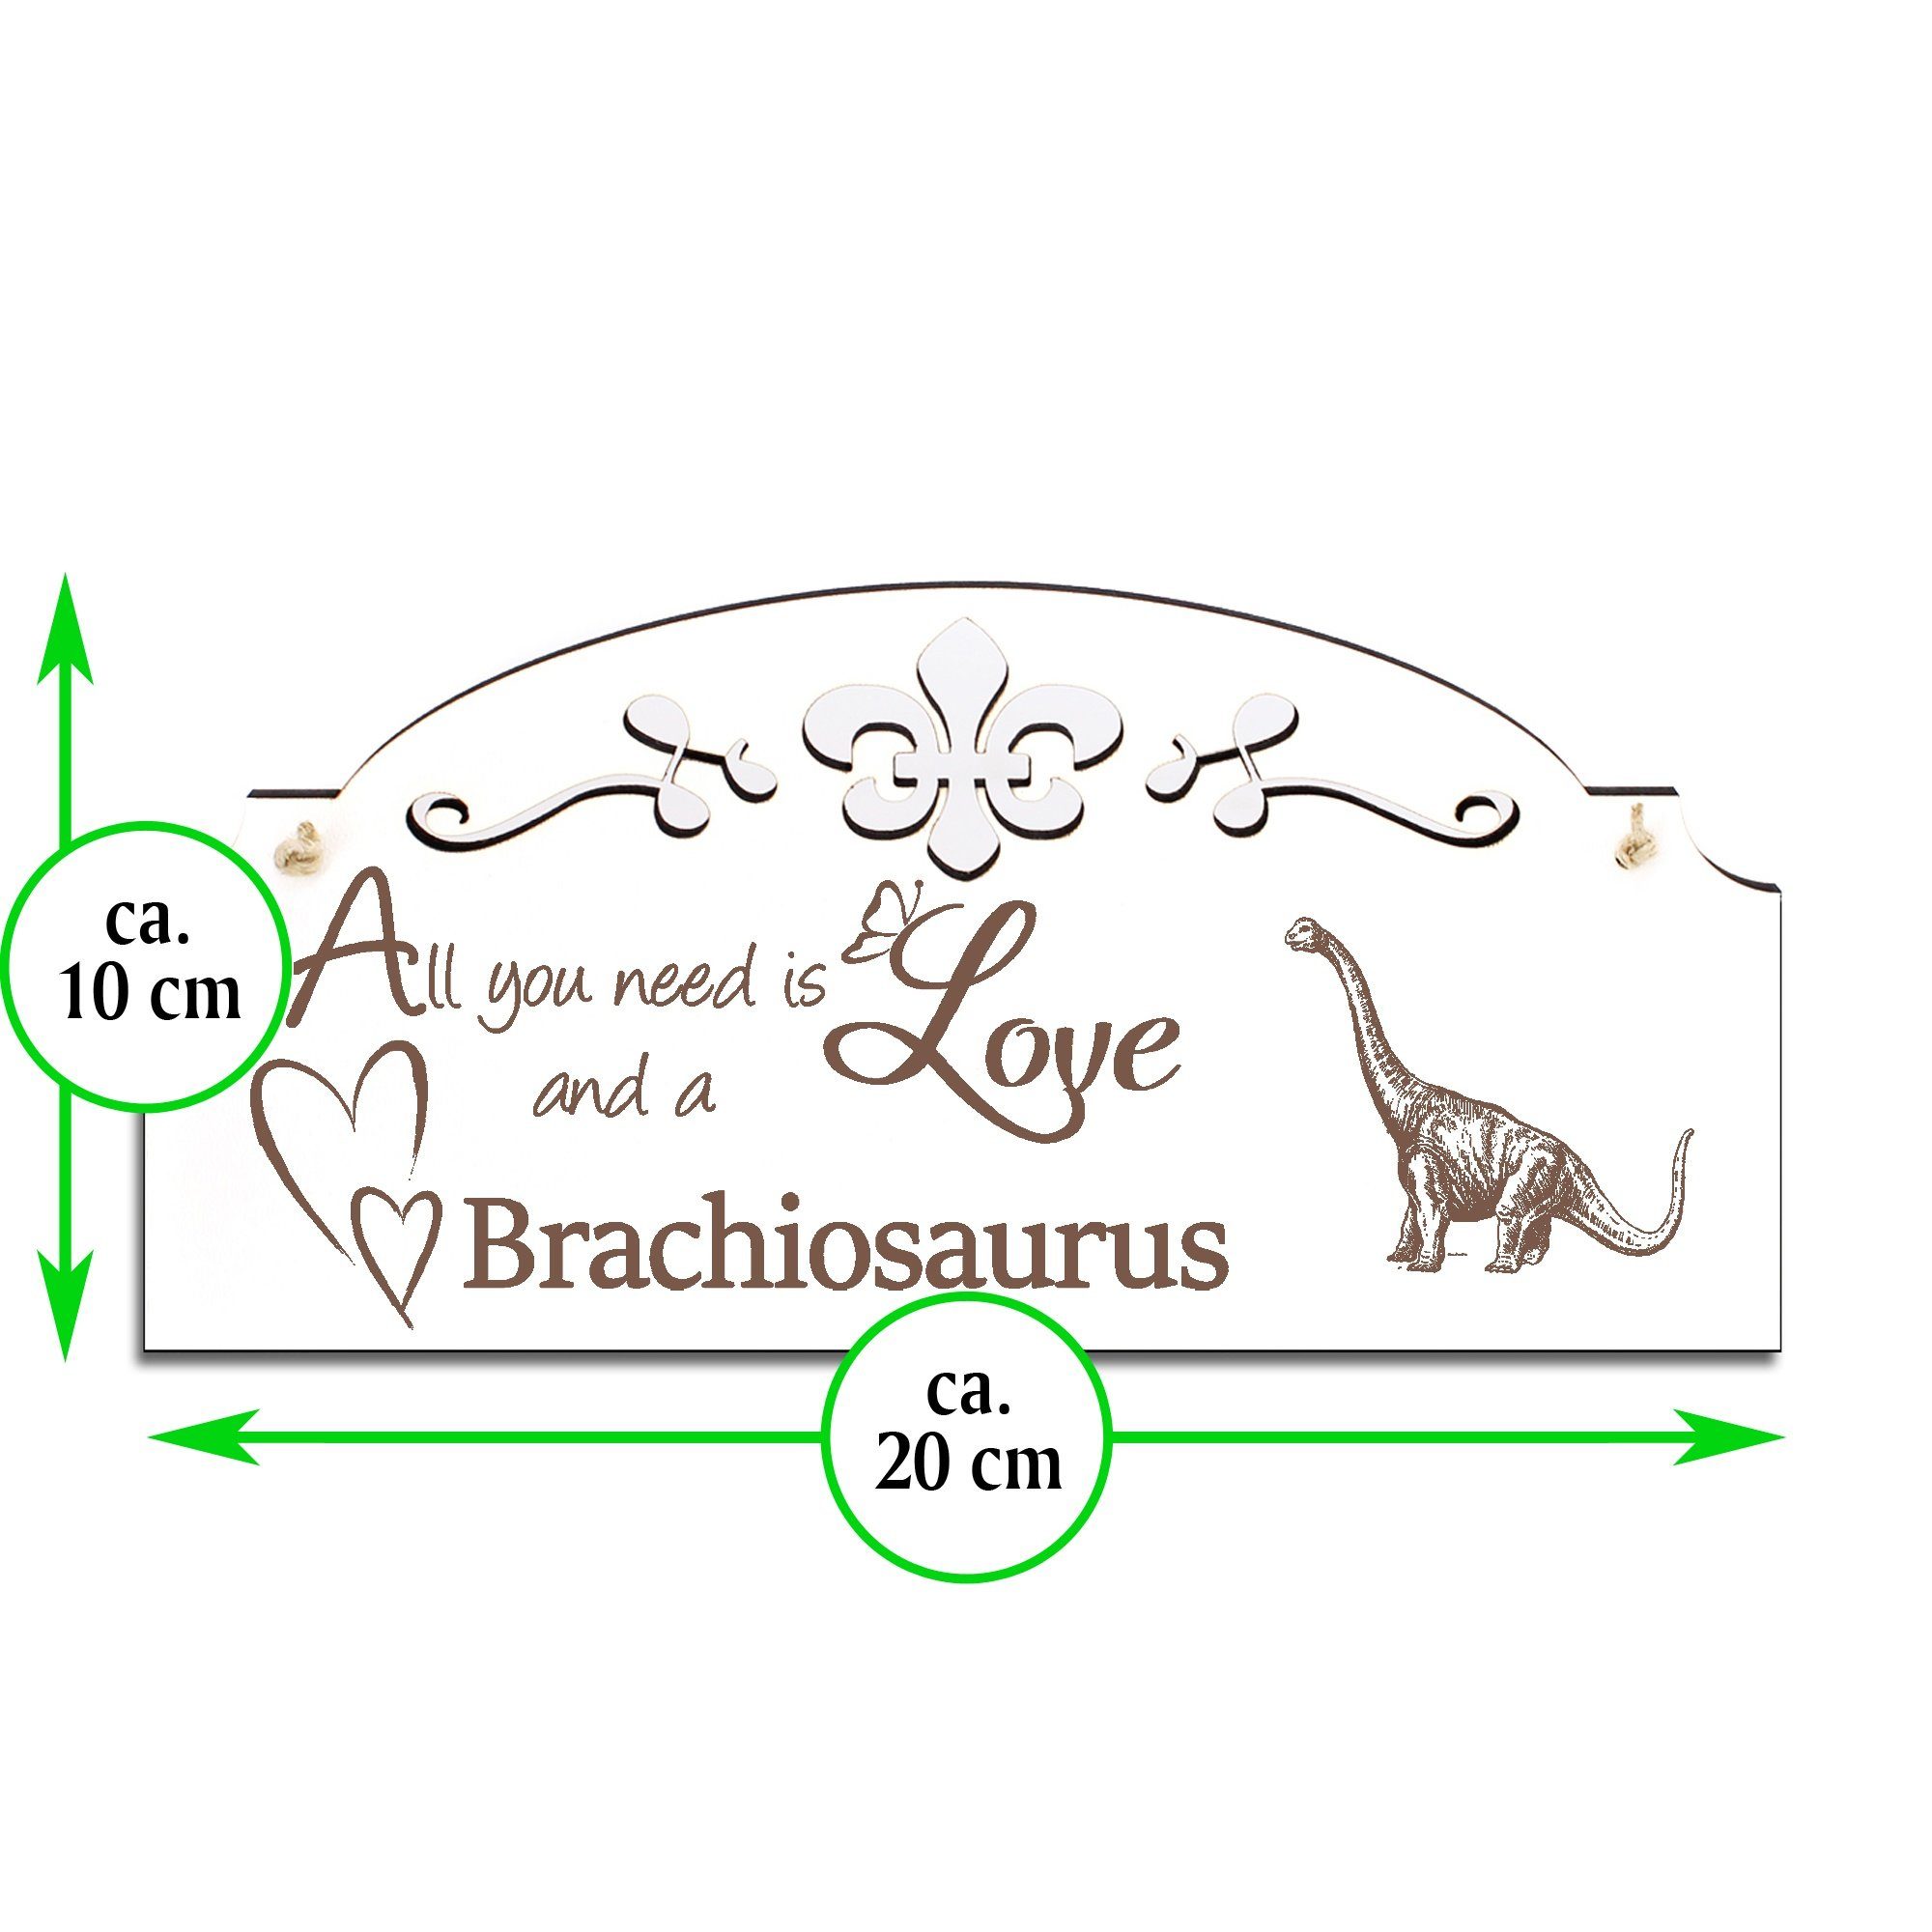 Love is need 20x10cm Dinosaurier Langhals All Brachiosaurus you Deko Hängedekoration Dekolando